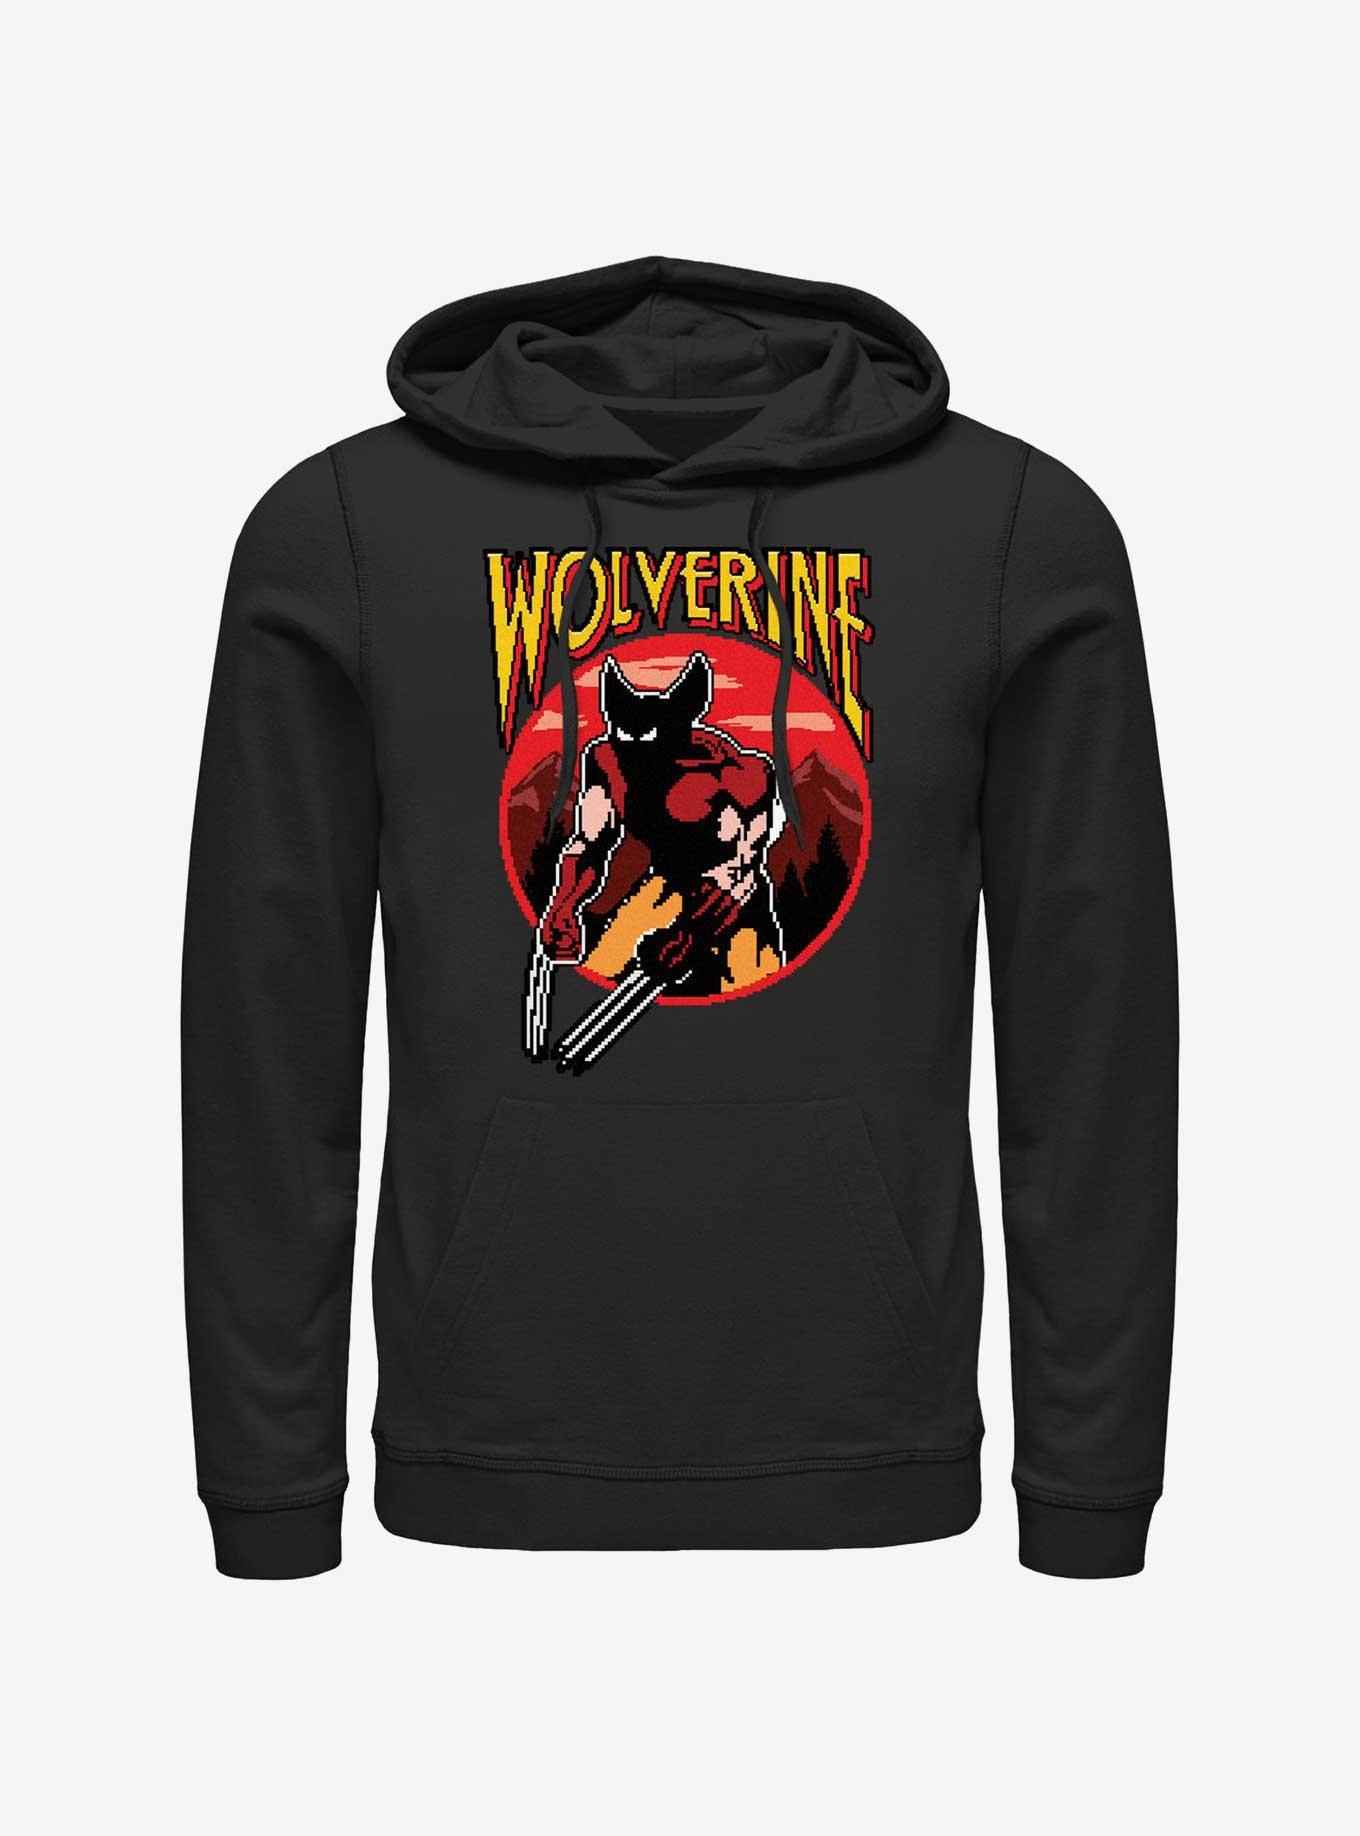 Wolverine Pixel Wolverine Hoodie, BLACK, hi-res